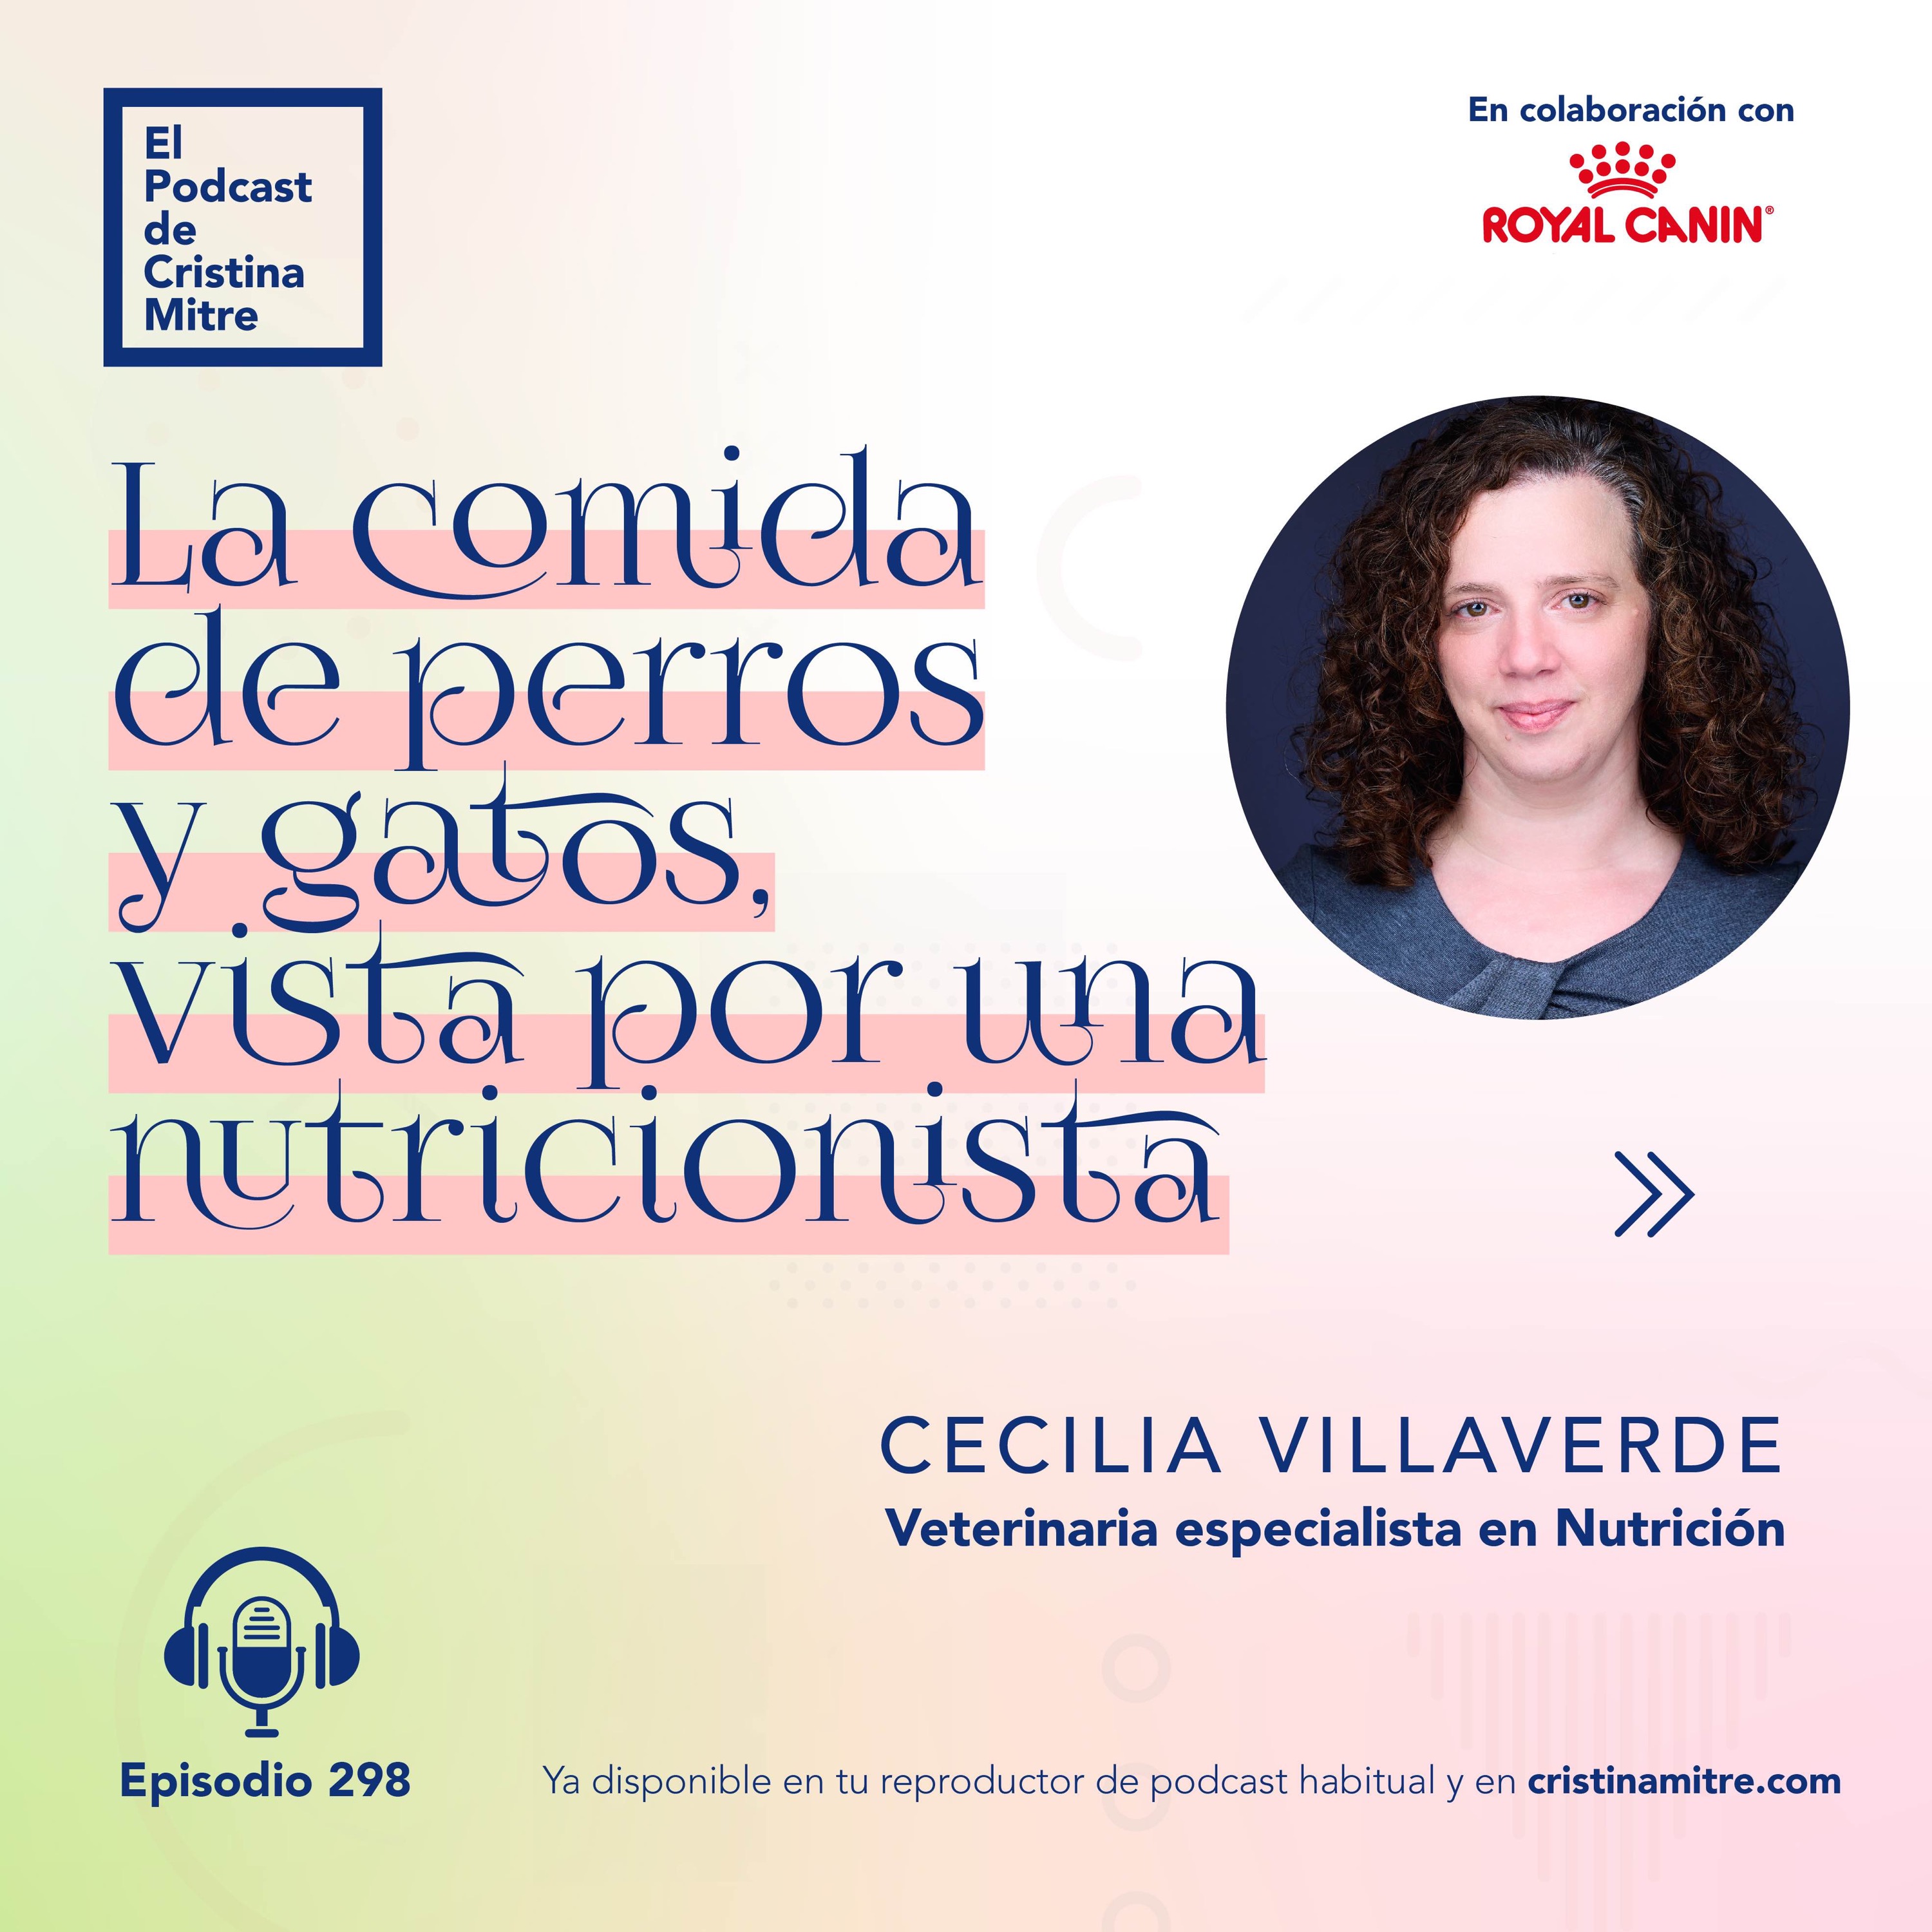 La comida de perros y gatos, vista por una nutricionista, con Cecilia Villaverde. Episodio 298